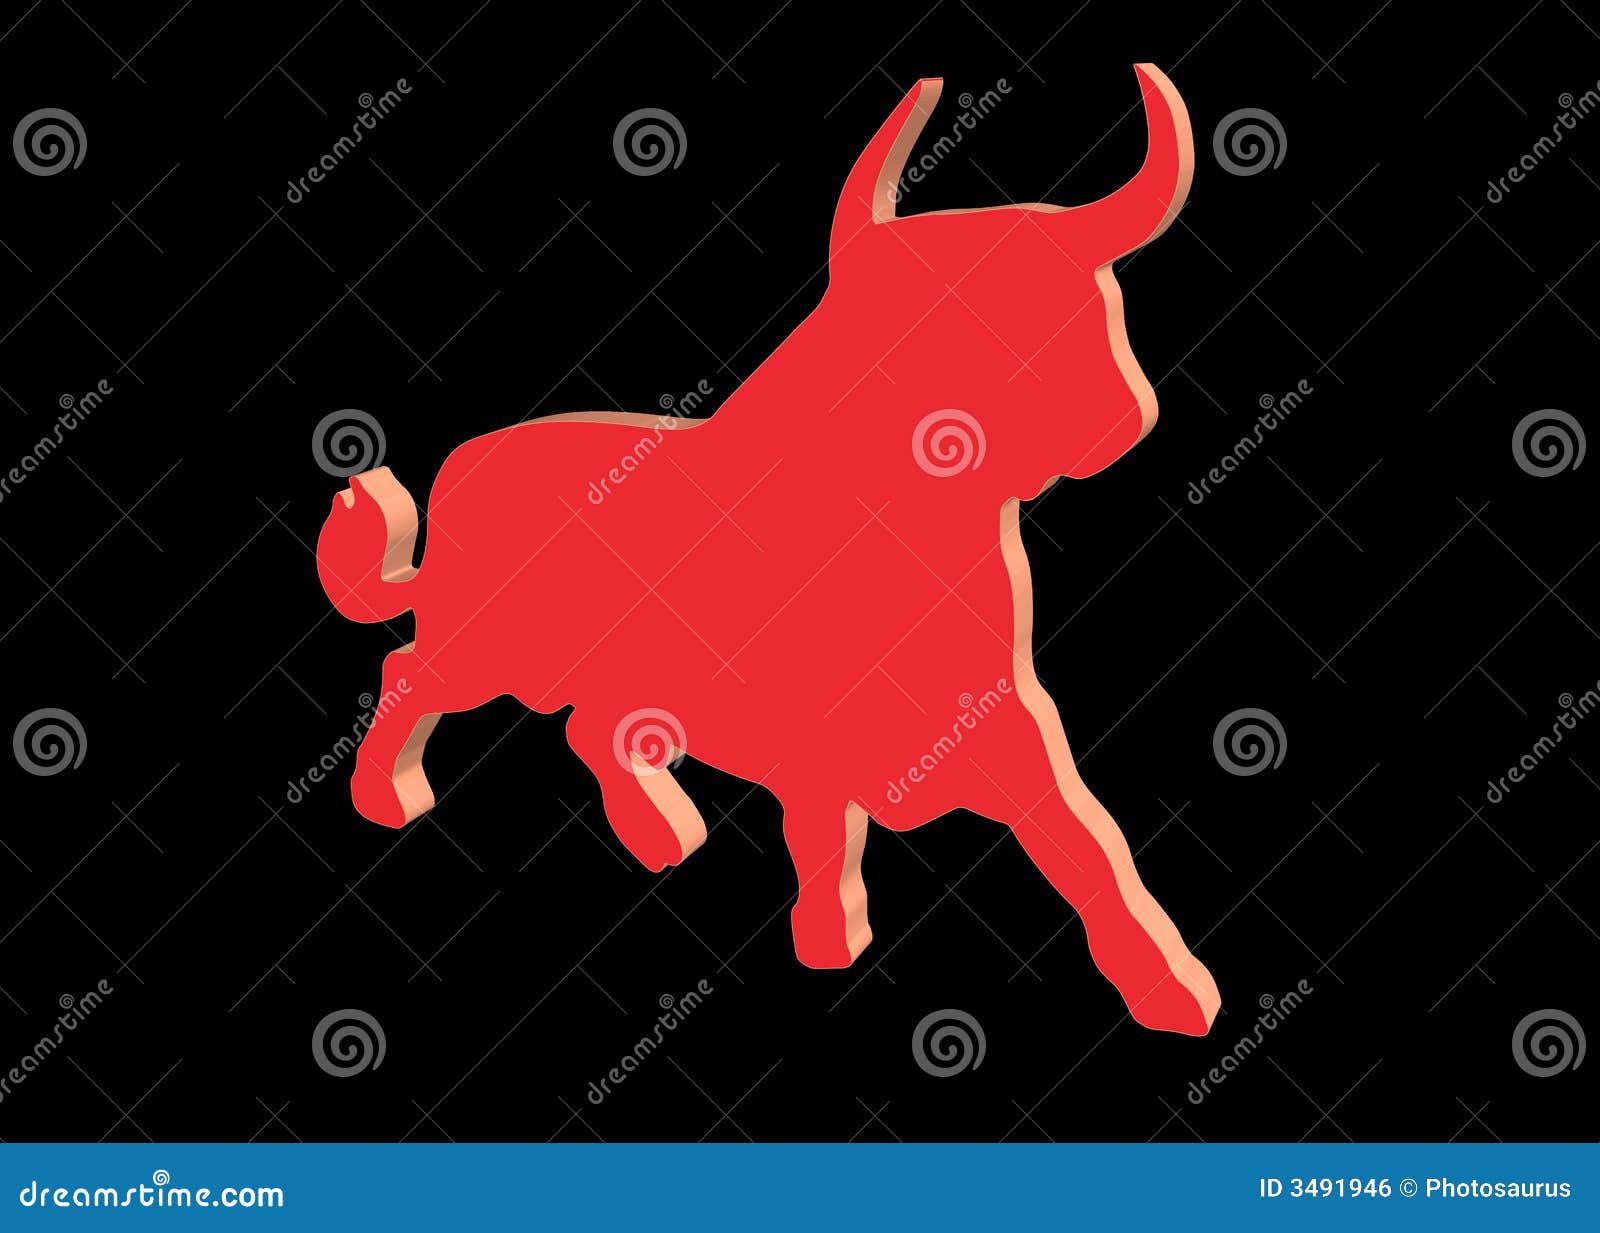 red bull on black